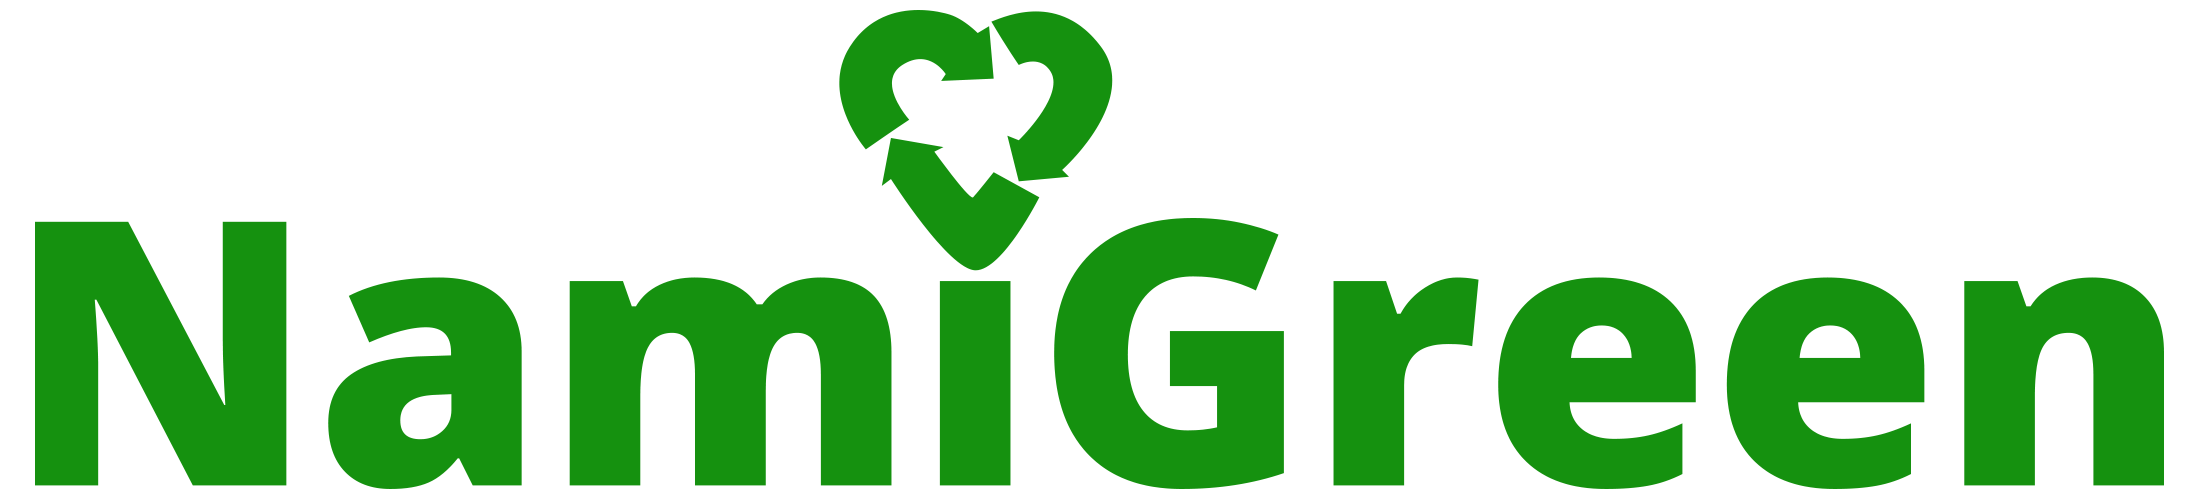 namigreen-logo.png